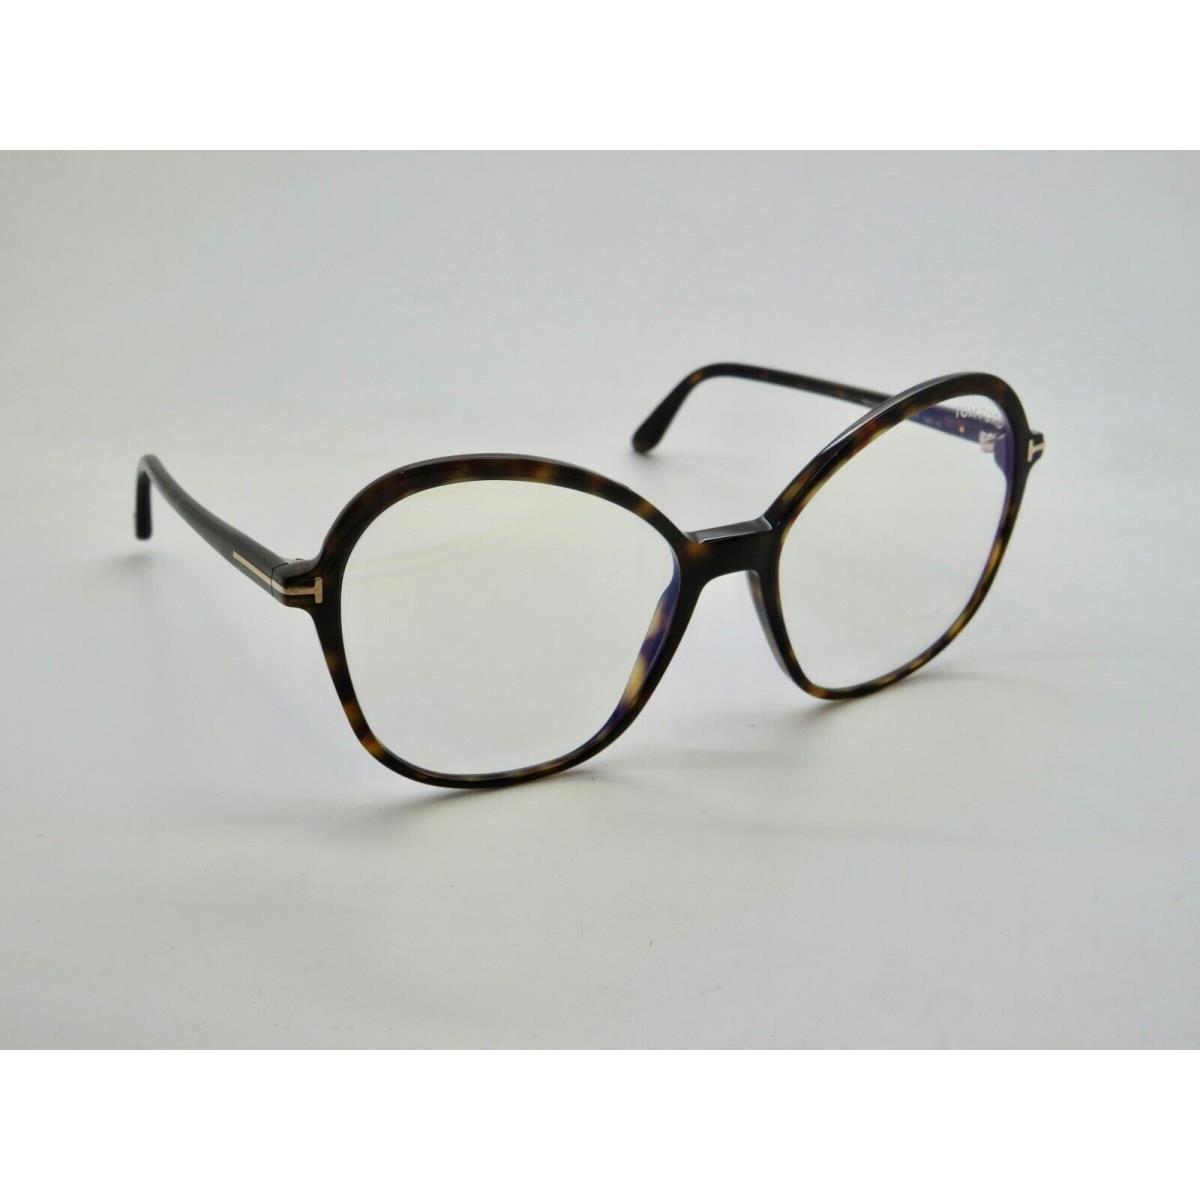 Tom Ford eyeglasses  - Havana Tortoise Frame 0